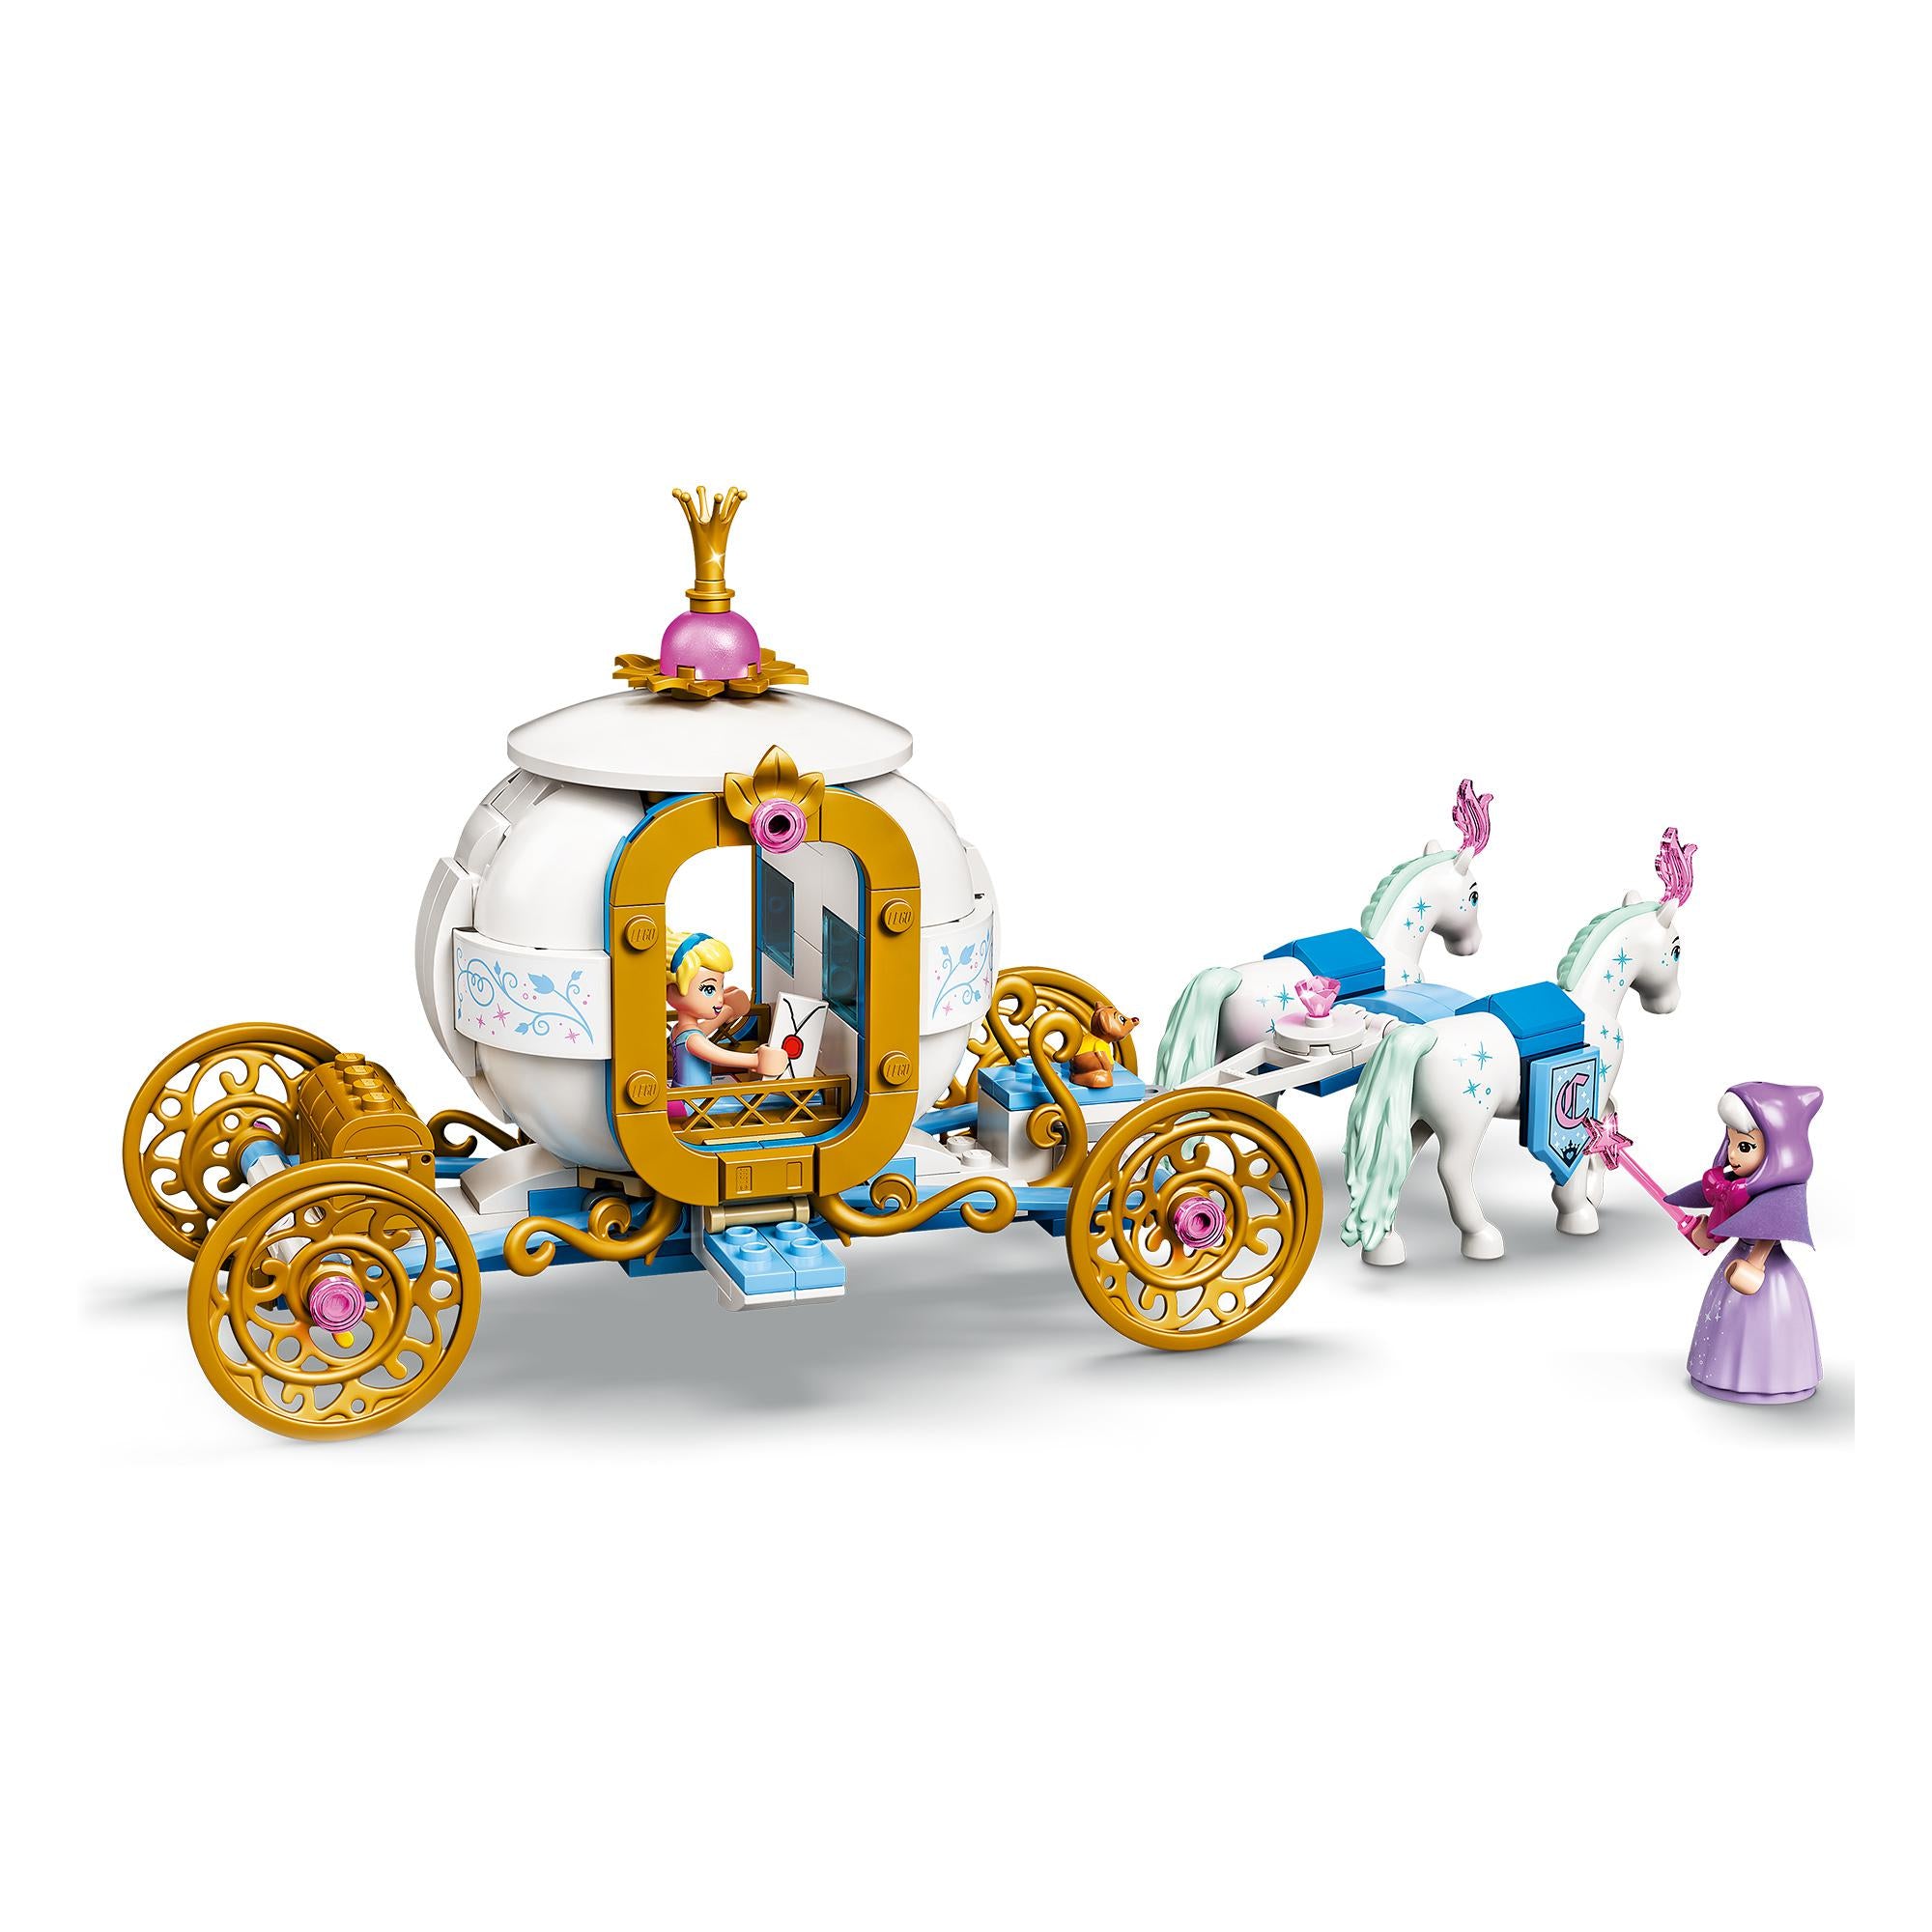 Cinderella’s Royal Carriage